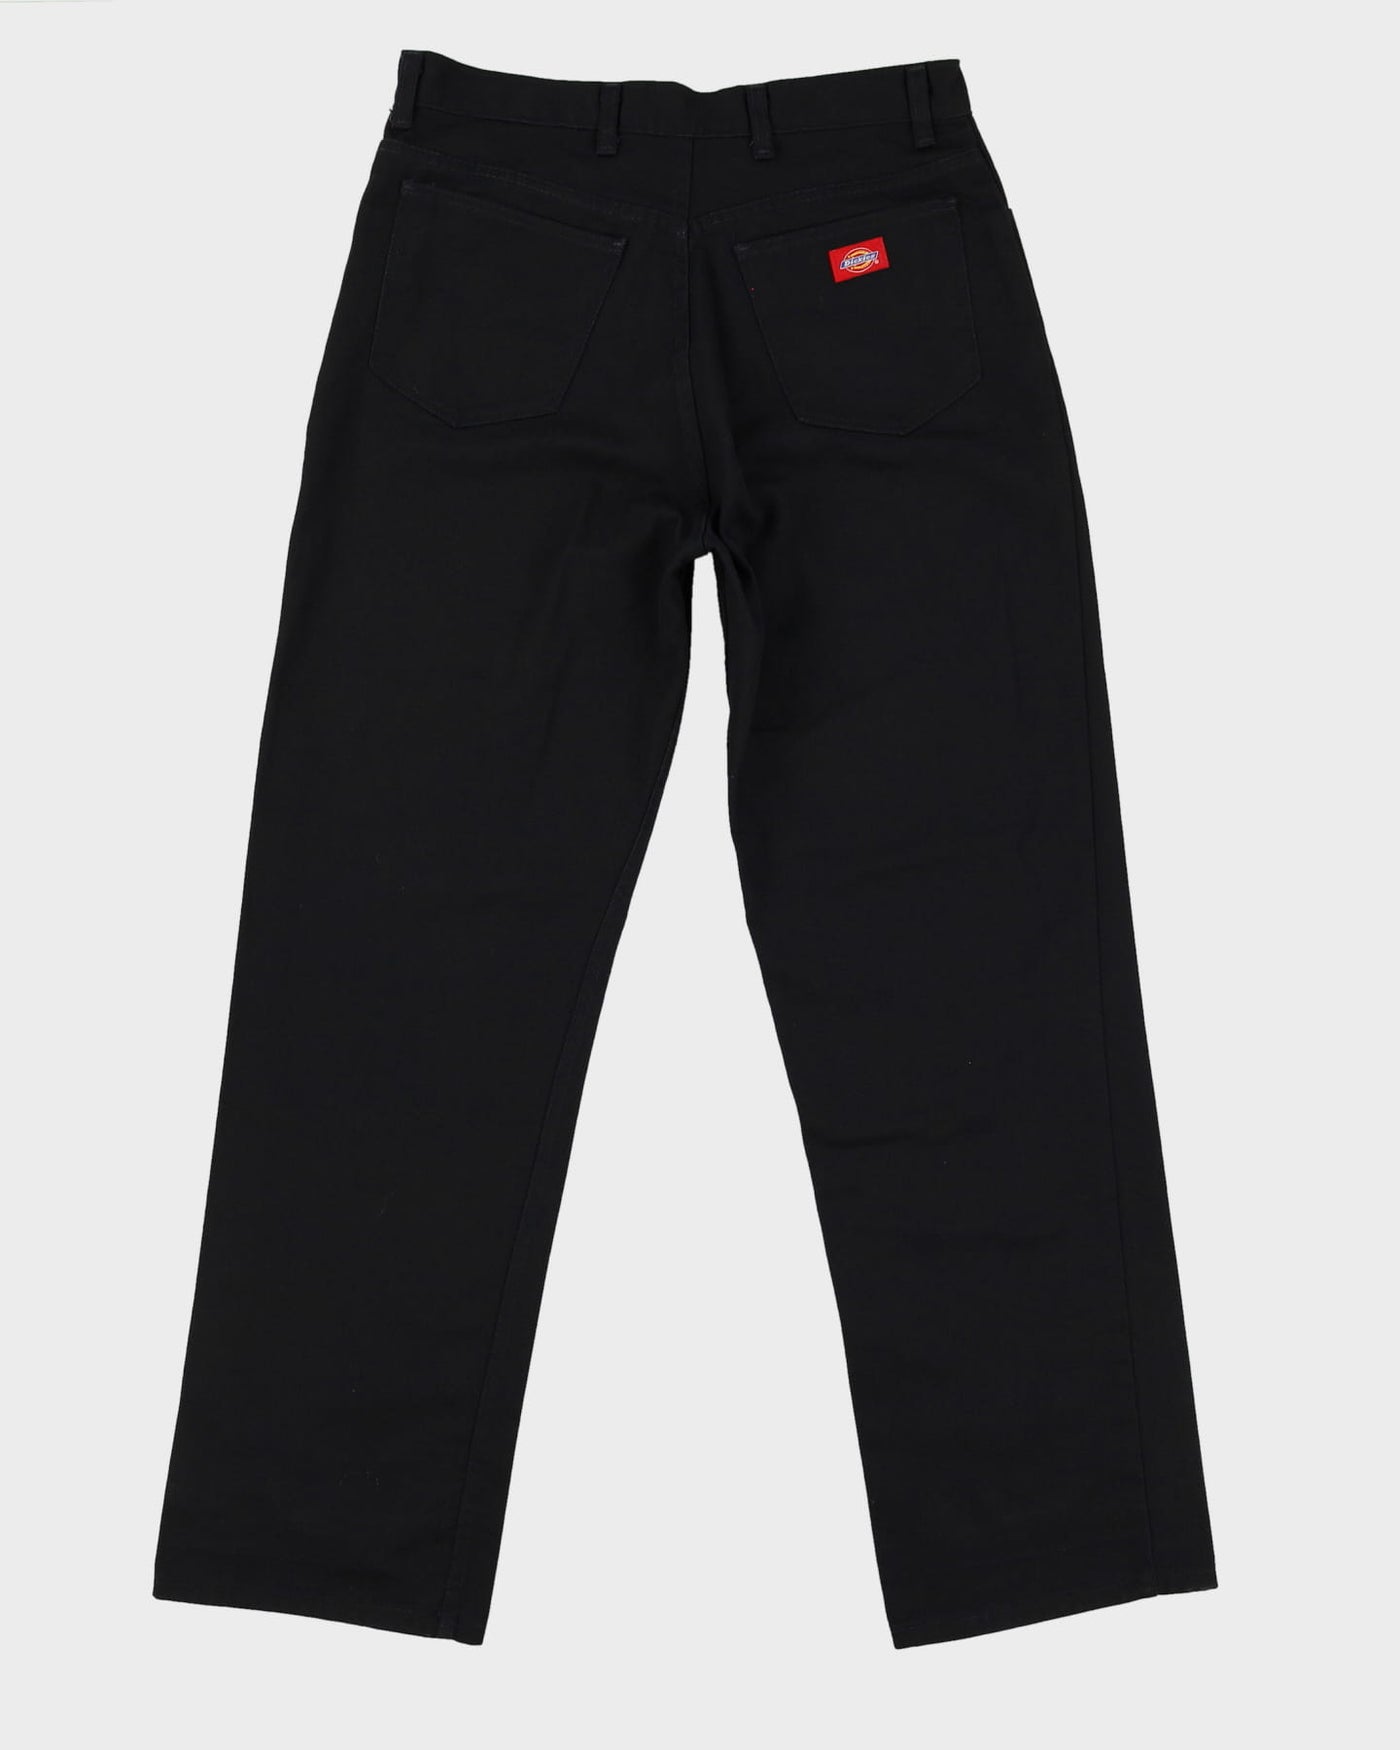 Vintage 90s Dickies Black Workwear Trousers - W33 L31